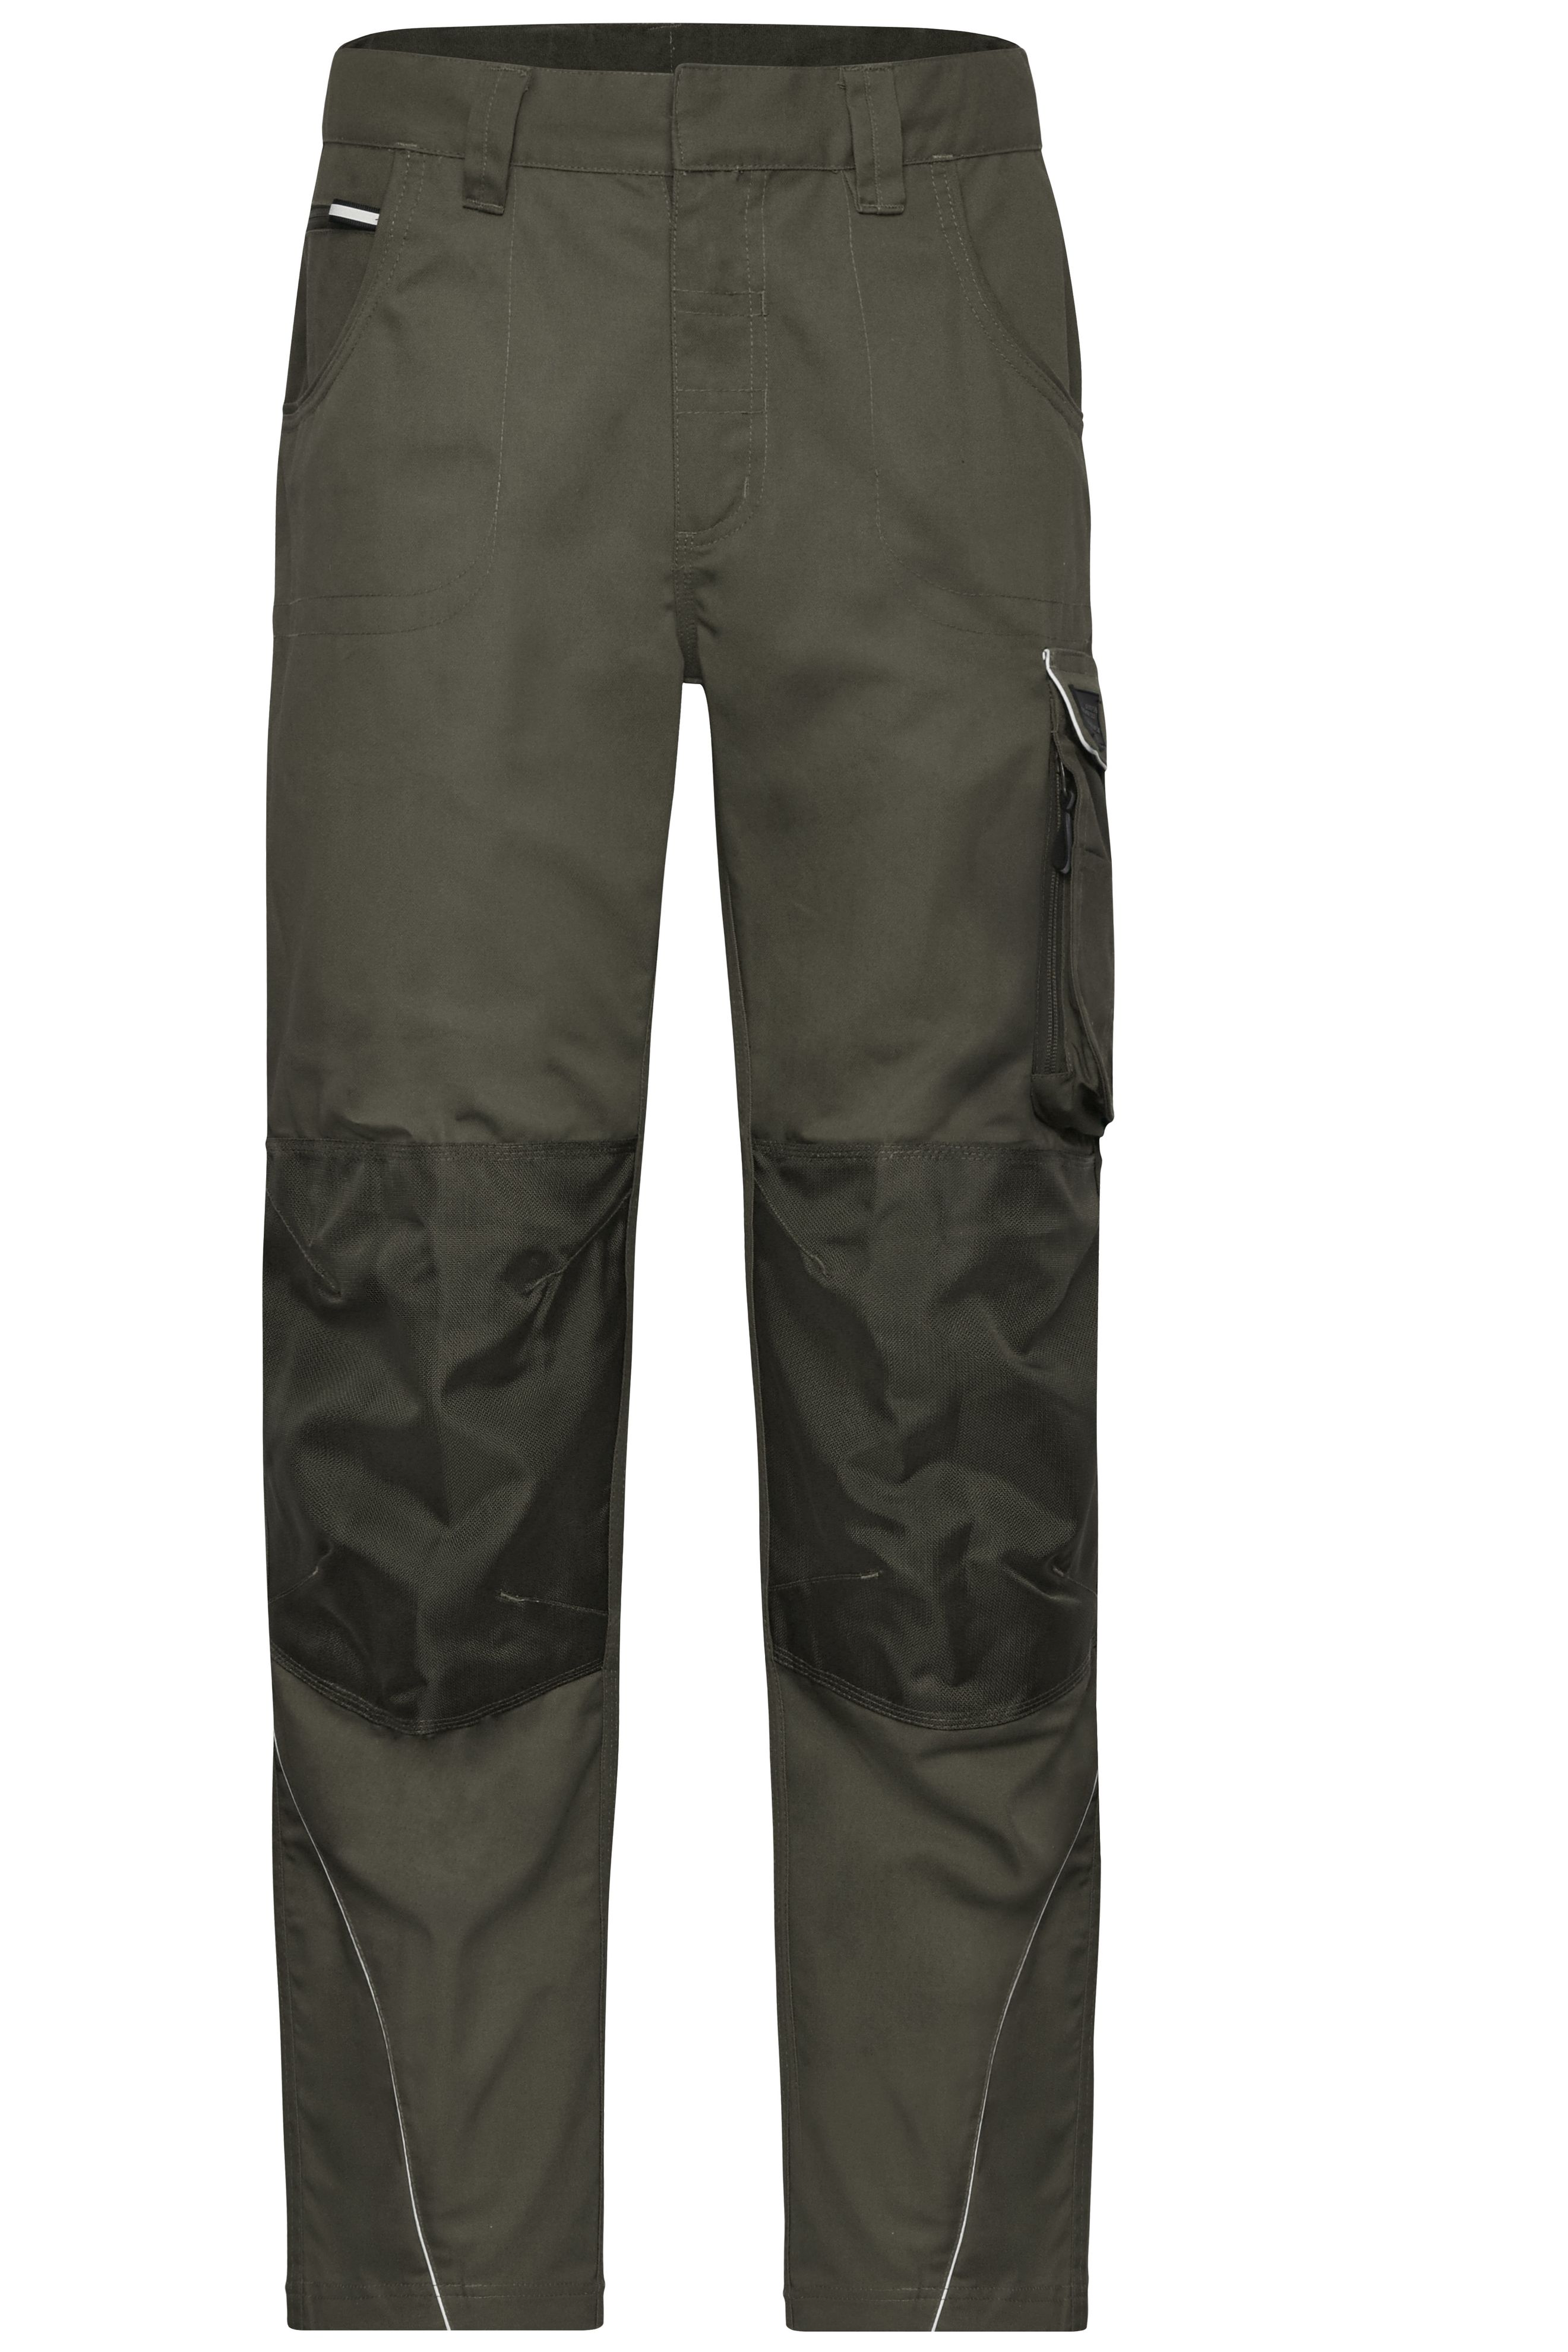 Workwear Pants - SOLID - JN878 Funktionelle Arbeitshose im cleanen Look mit hochwertigen Details